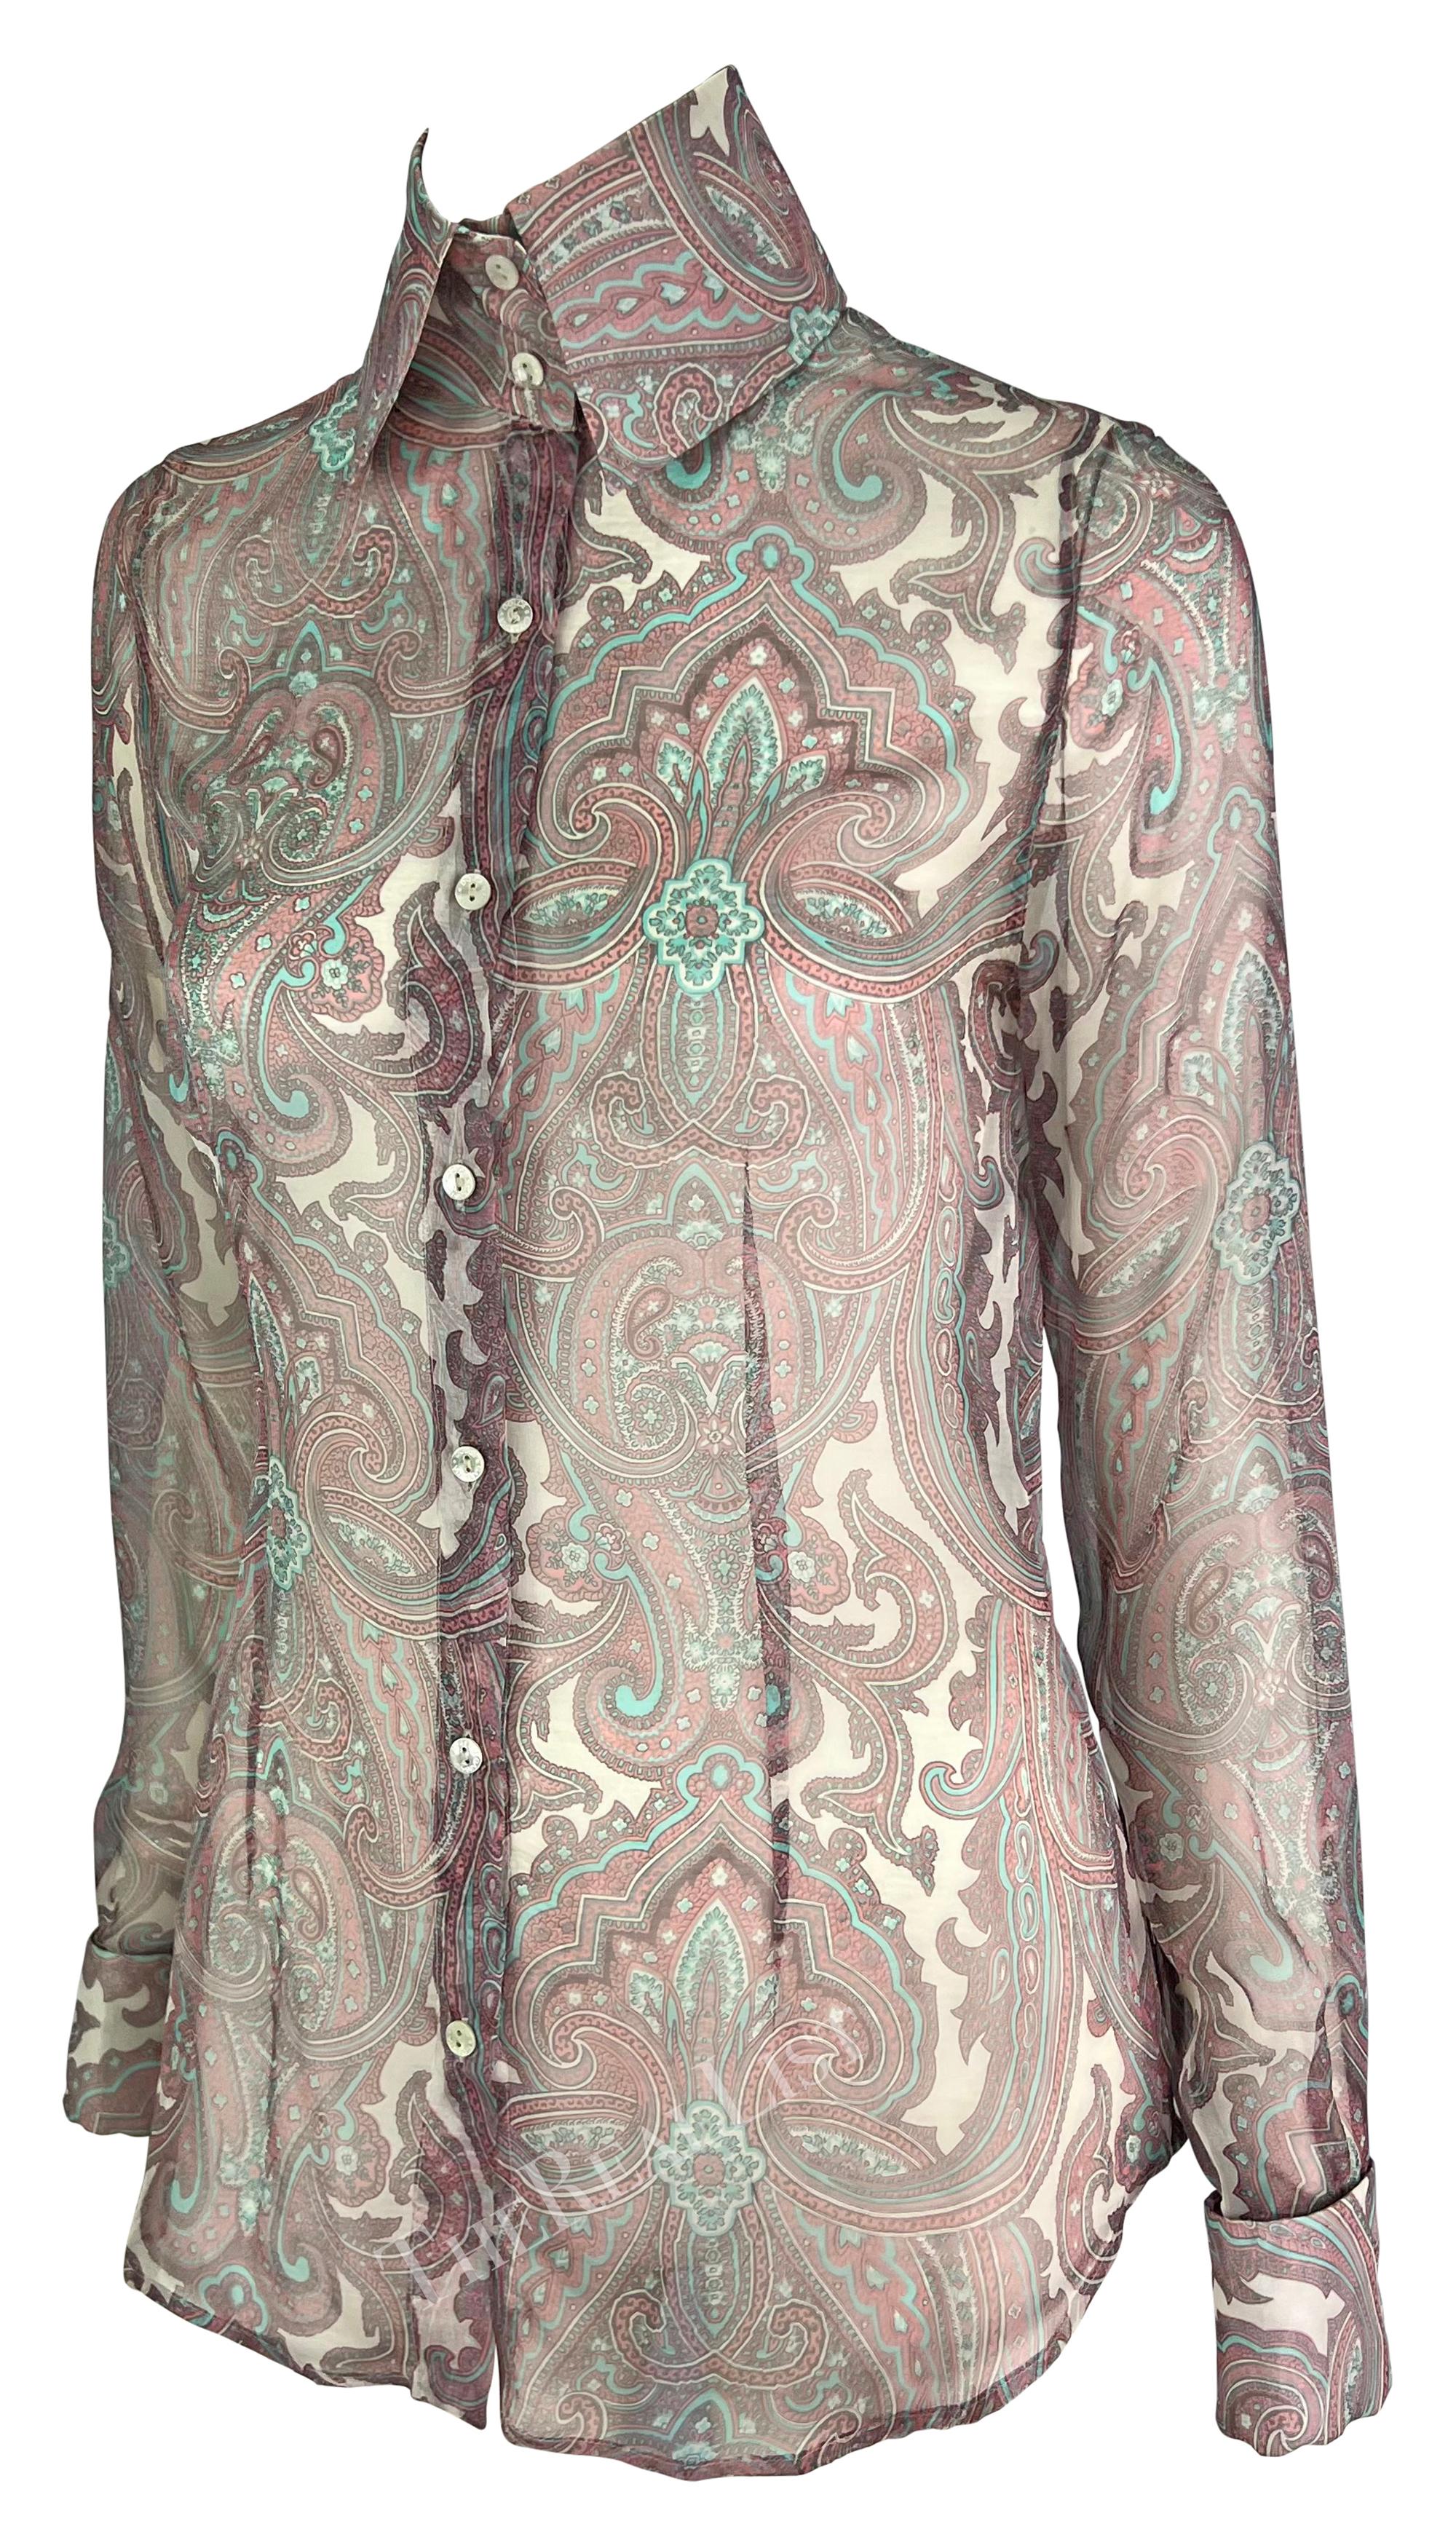 S/S 2000 Dolce & Gabbana Pink Paisley Sheer Button Rhinestone Cuff Shirt For Sale 2